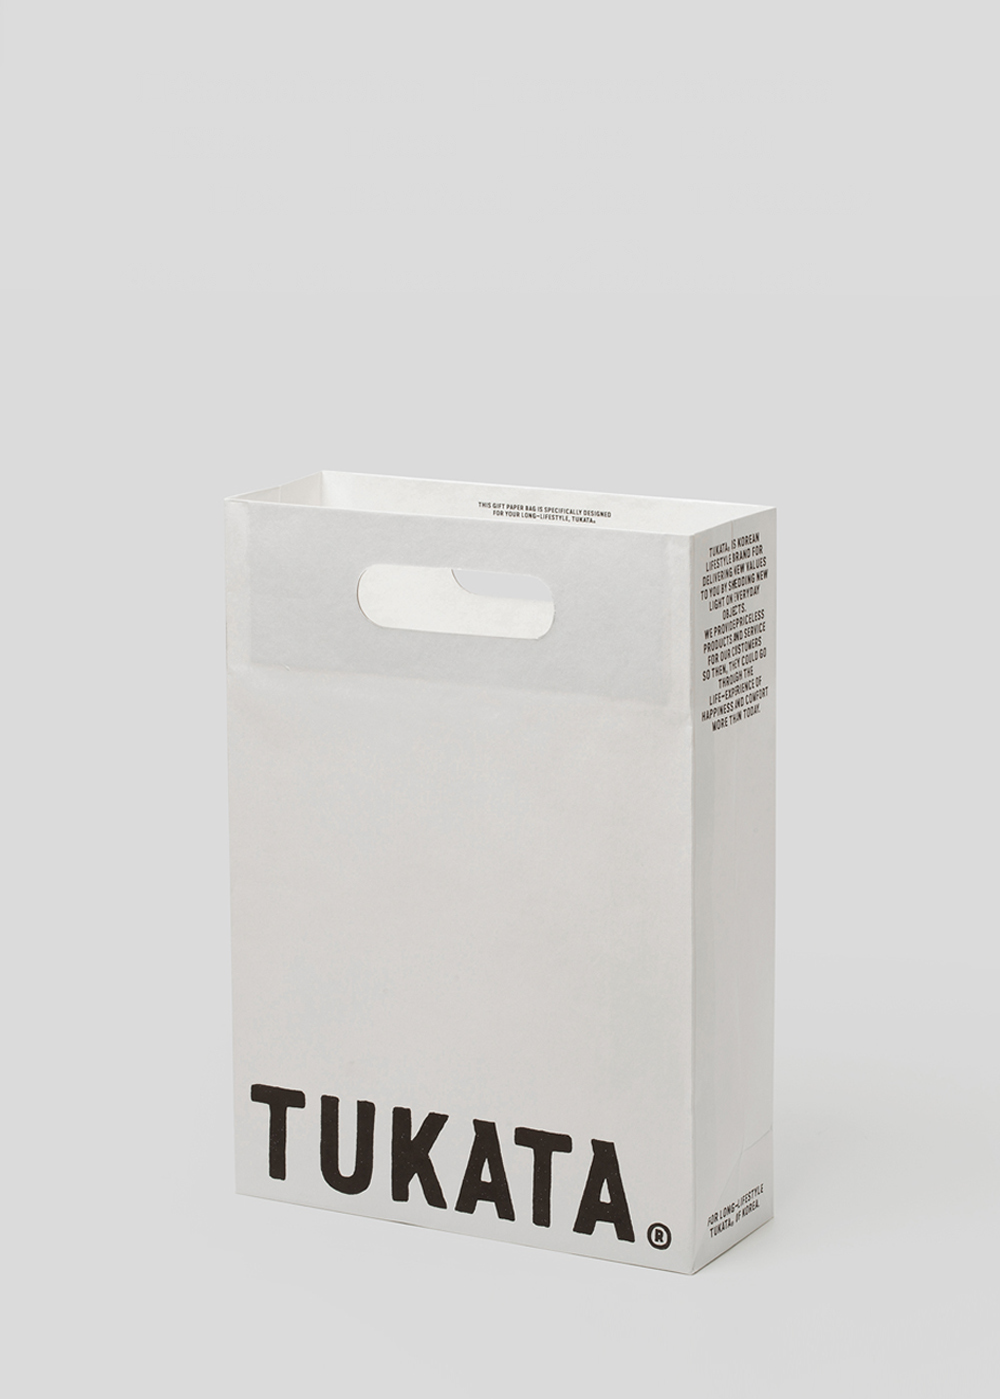 TUKATA® gift shopper bag